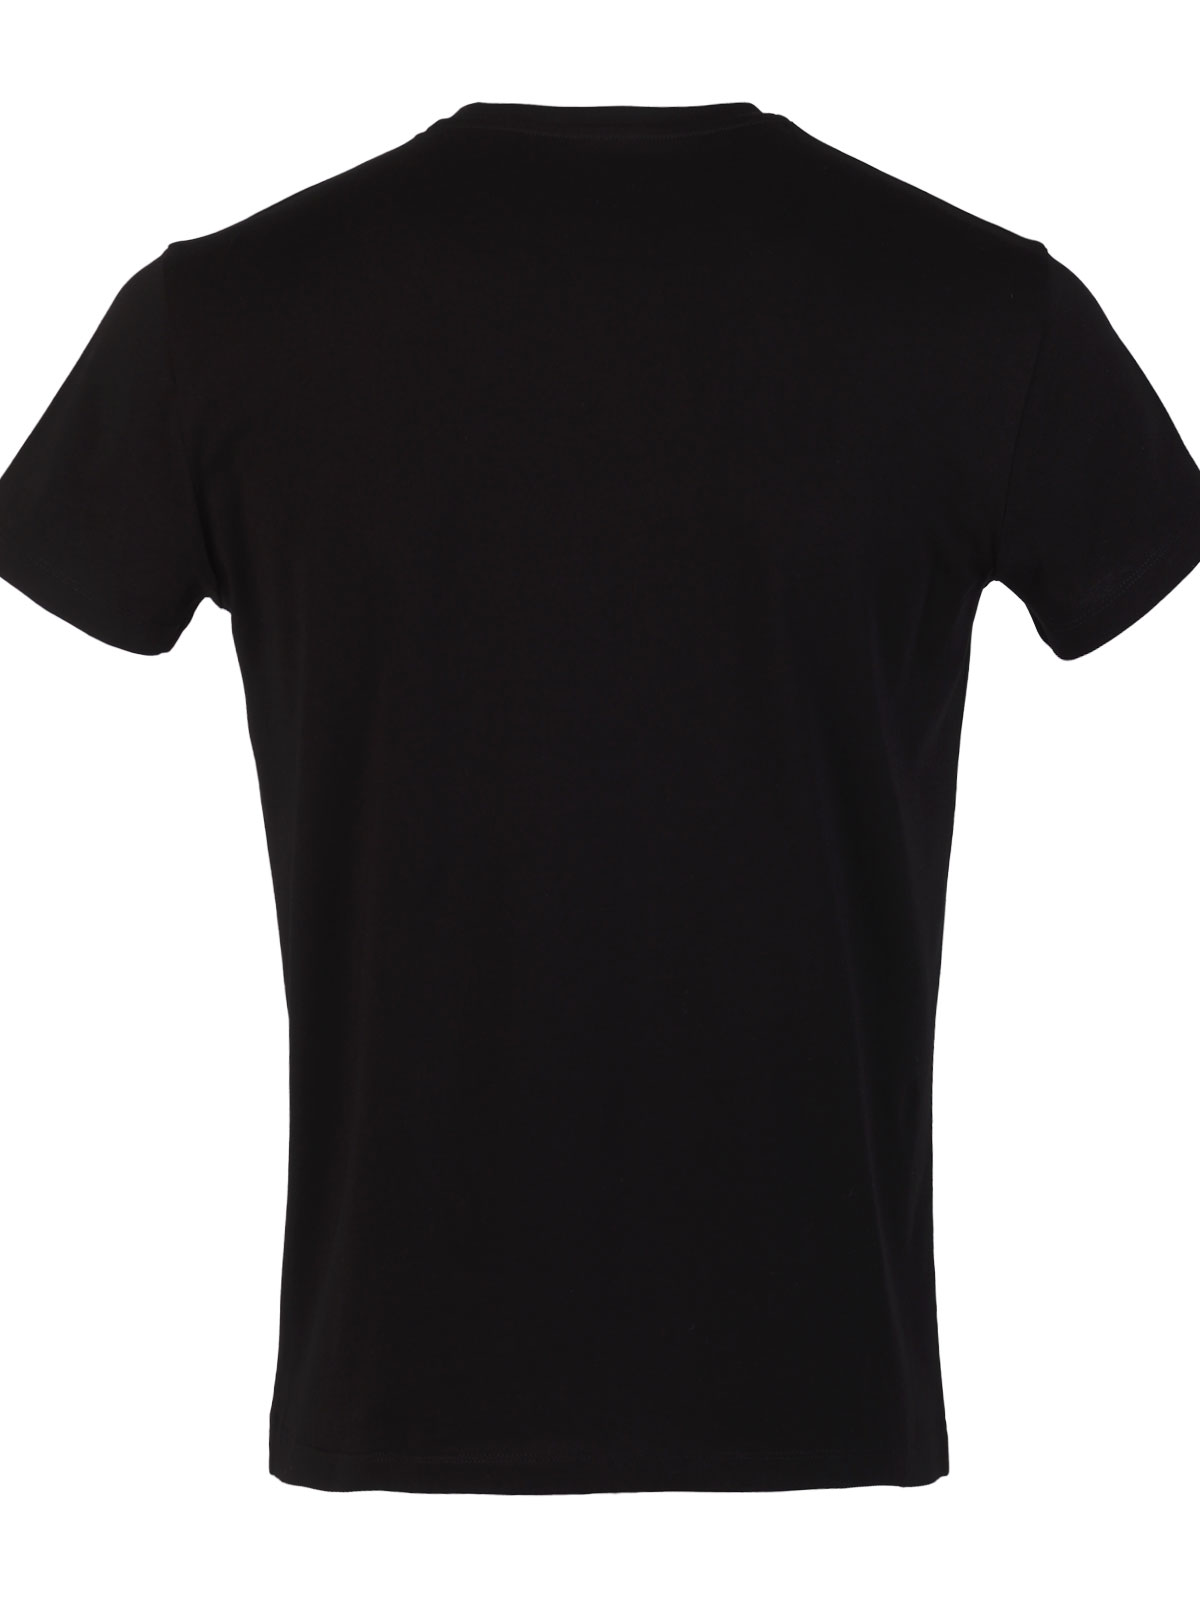 Μονόχρωμο απλό μπλουζάκι - 97001 € 20.25 img2